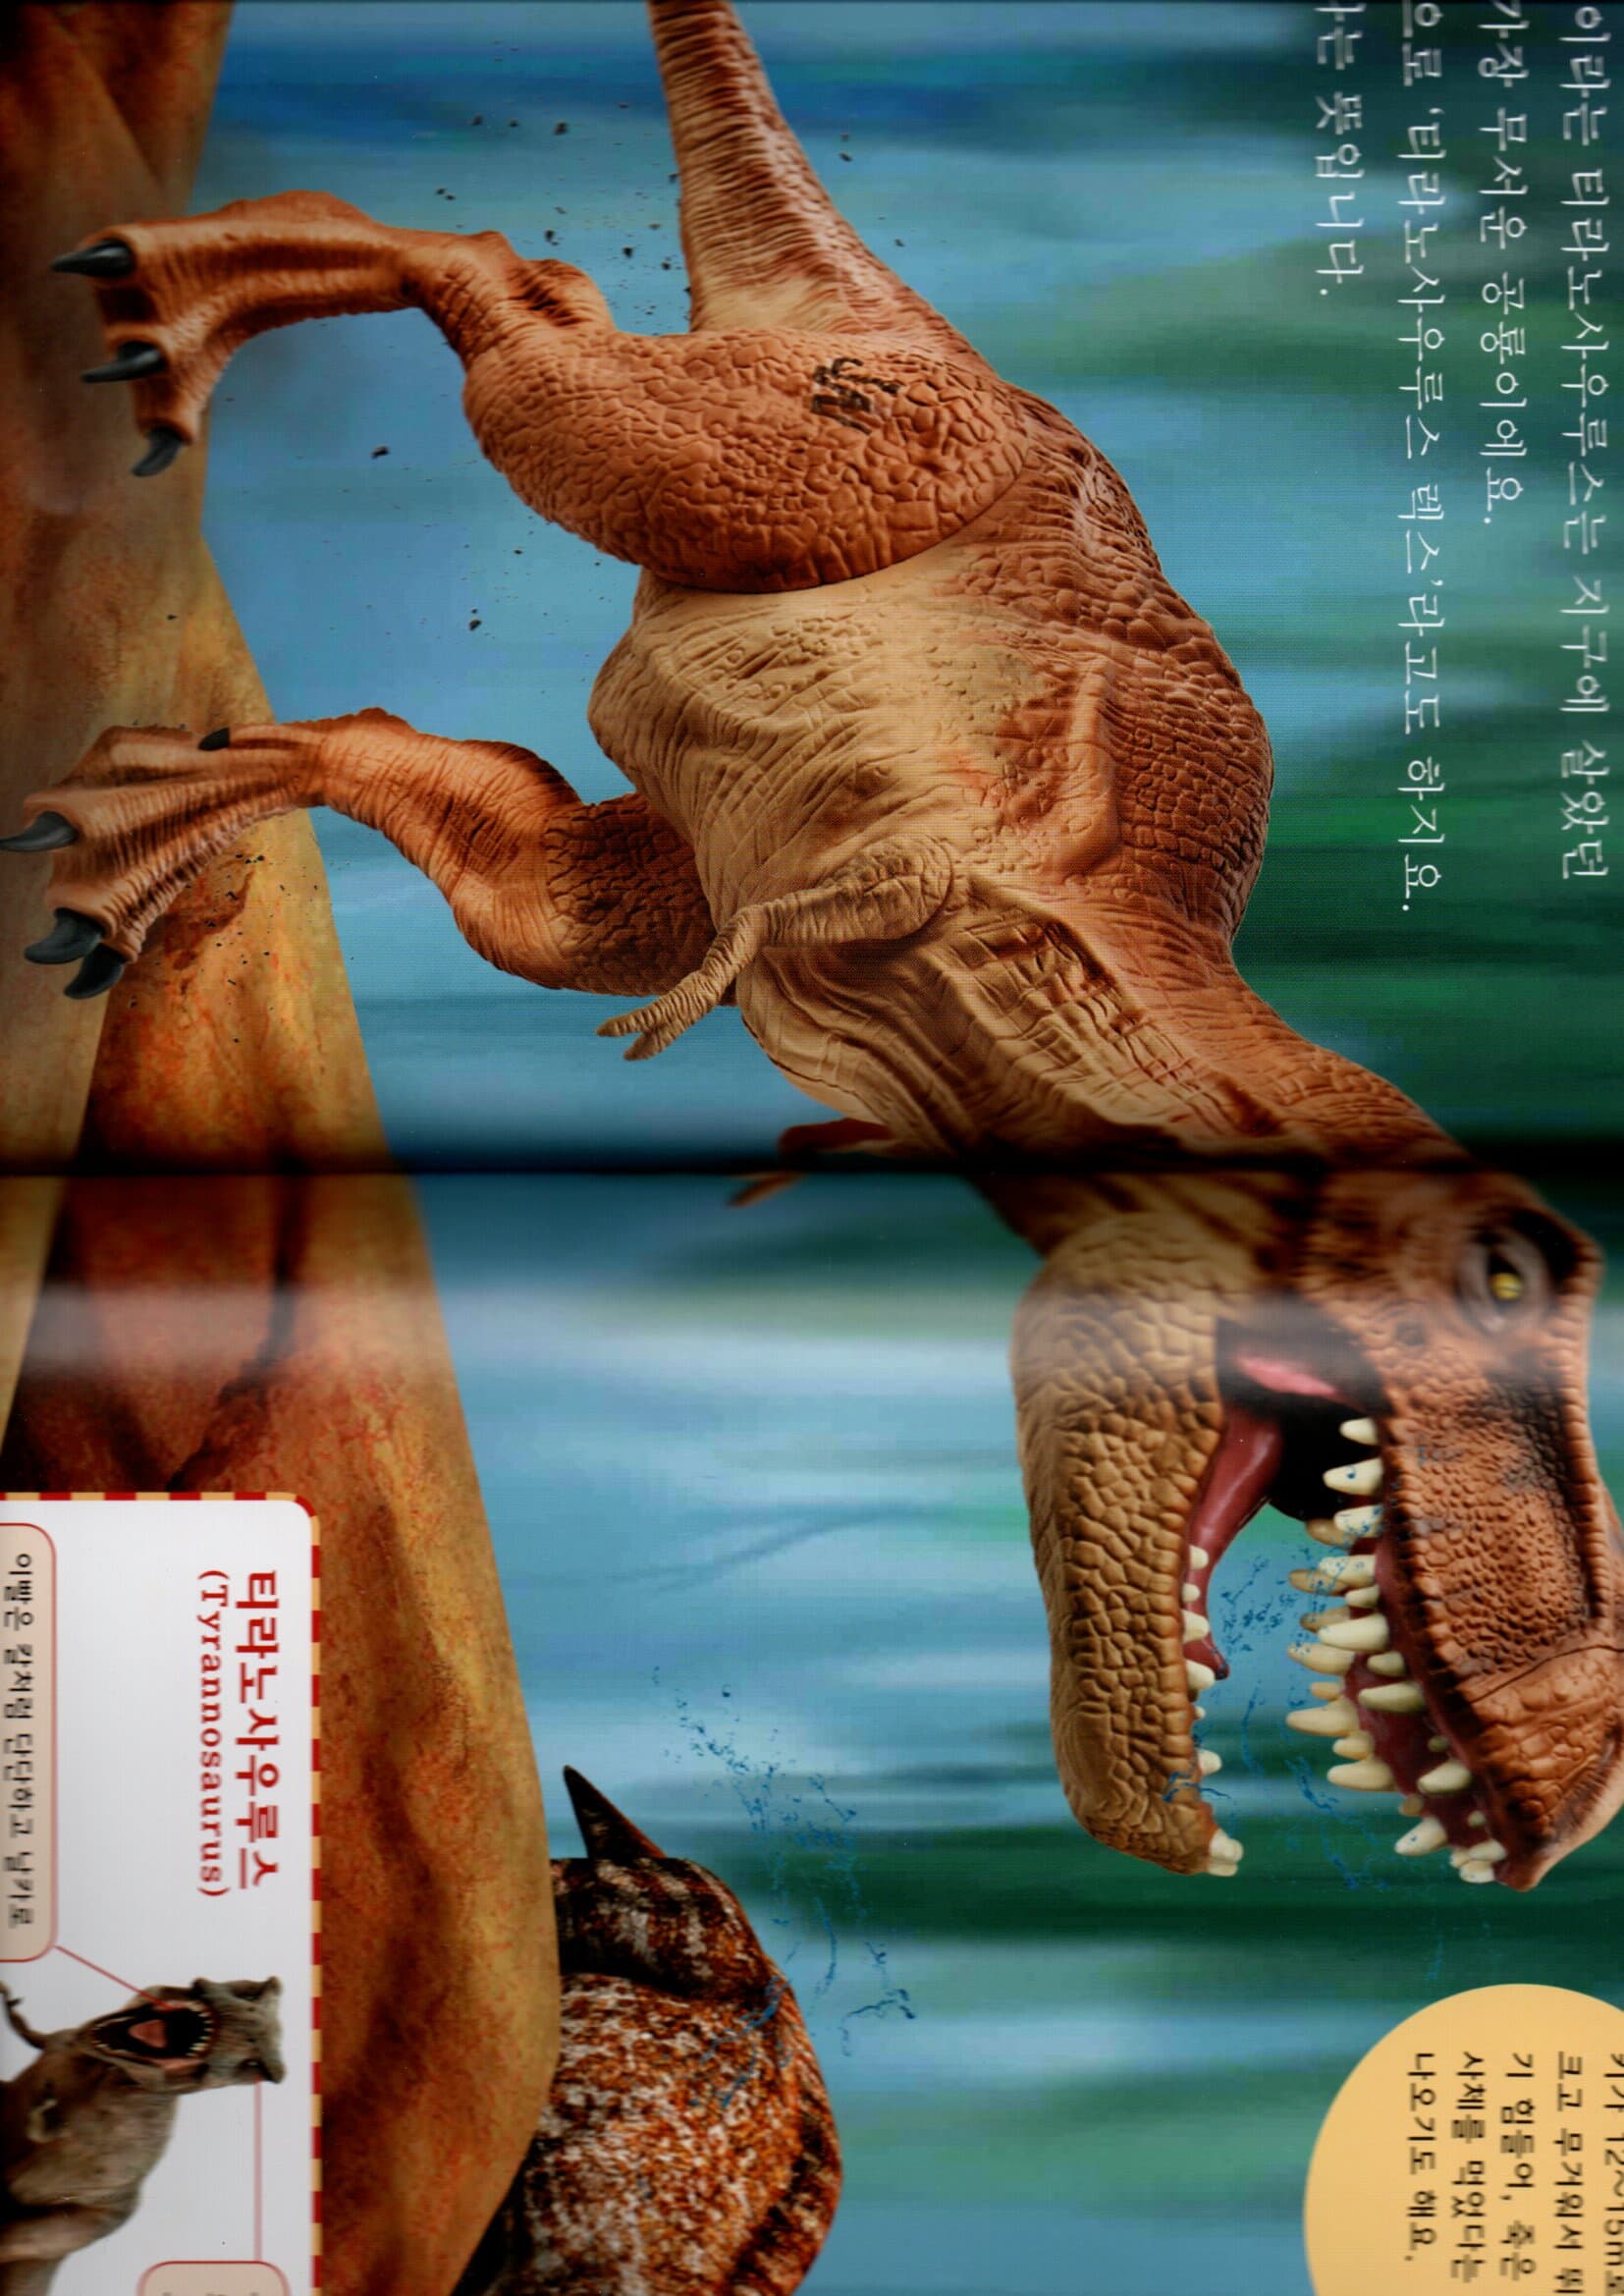 공룡 세트 1-12 (전12권)-아이 러브 디노 세트-어린이날 선물용(박스포장)